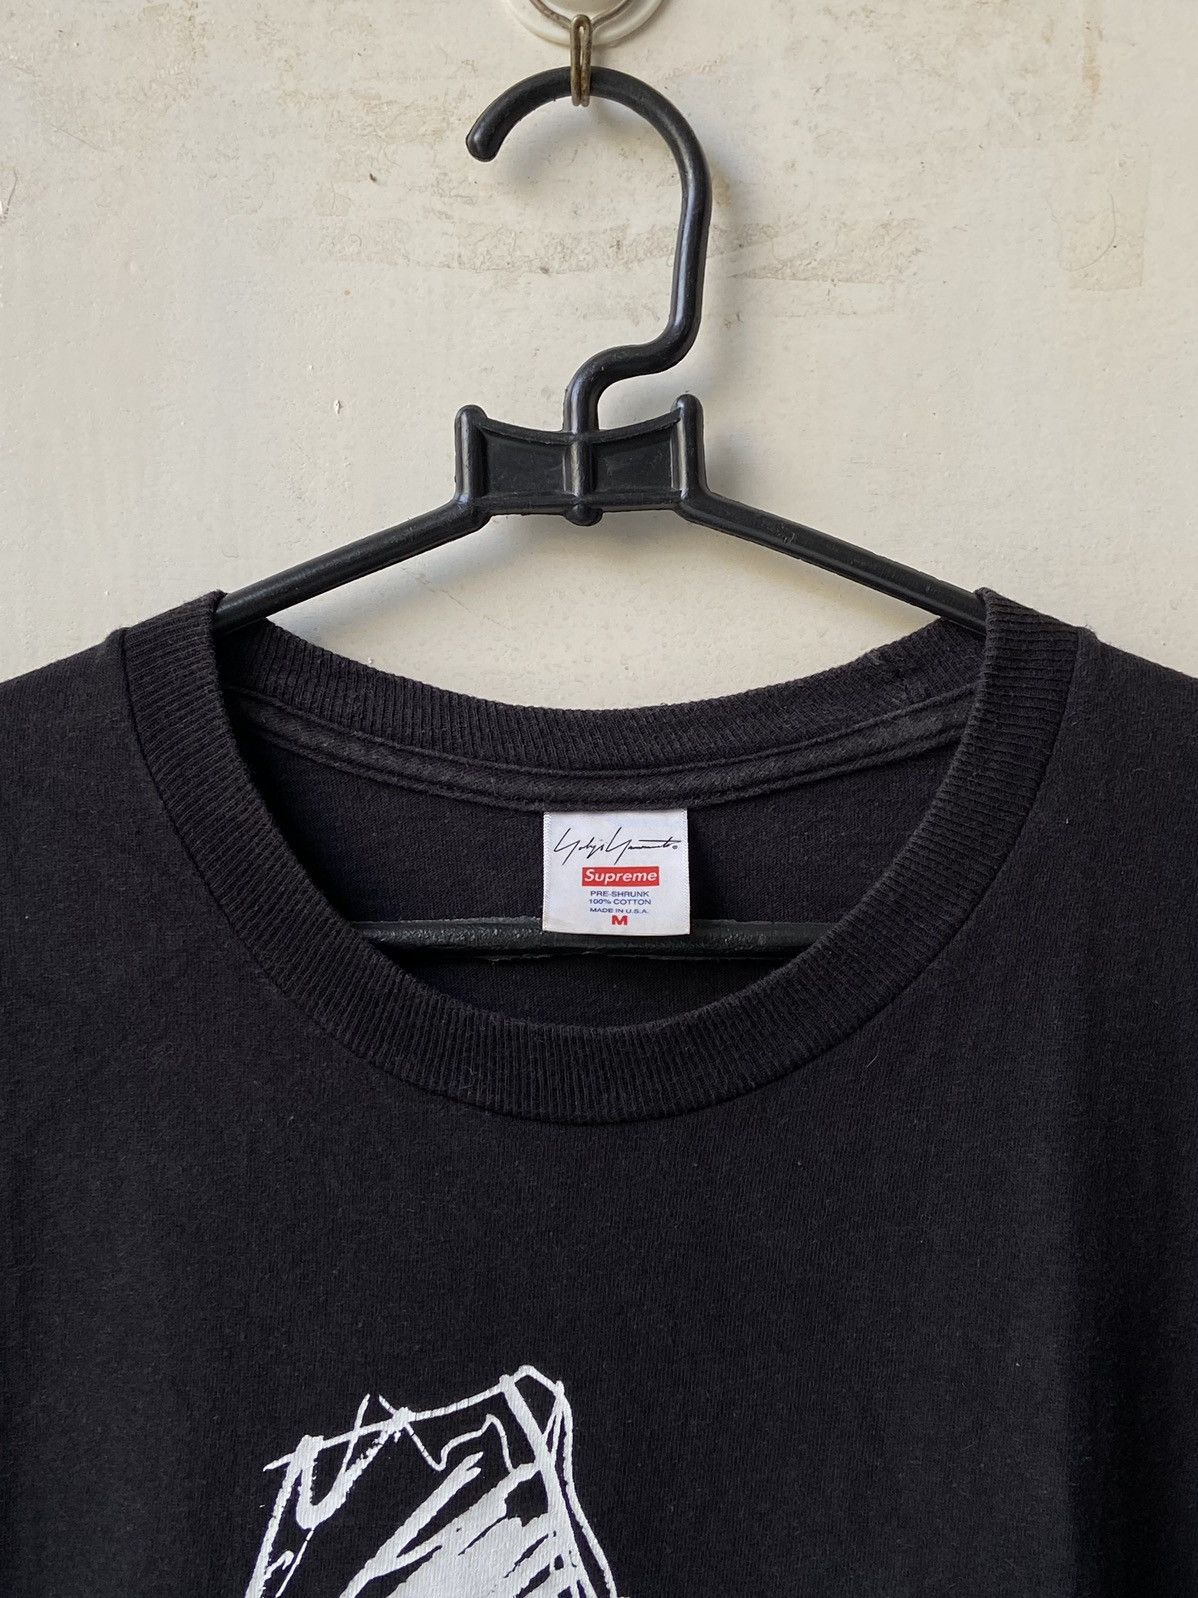 Supreme YOHJI YAMAMOTO x SUPREME Black T-Shirt | Grailed